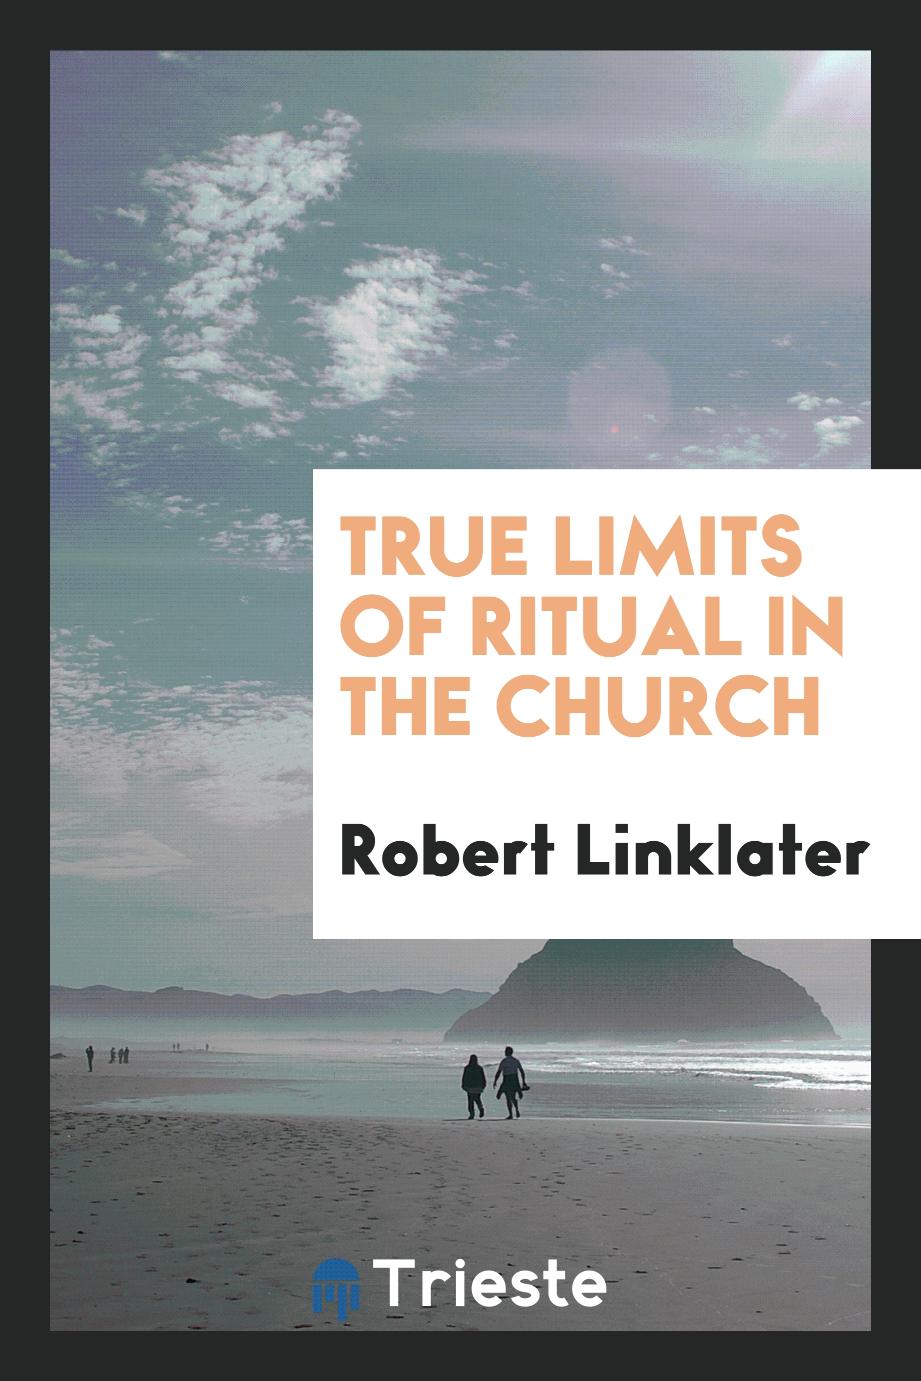 True limits of ritual in the church